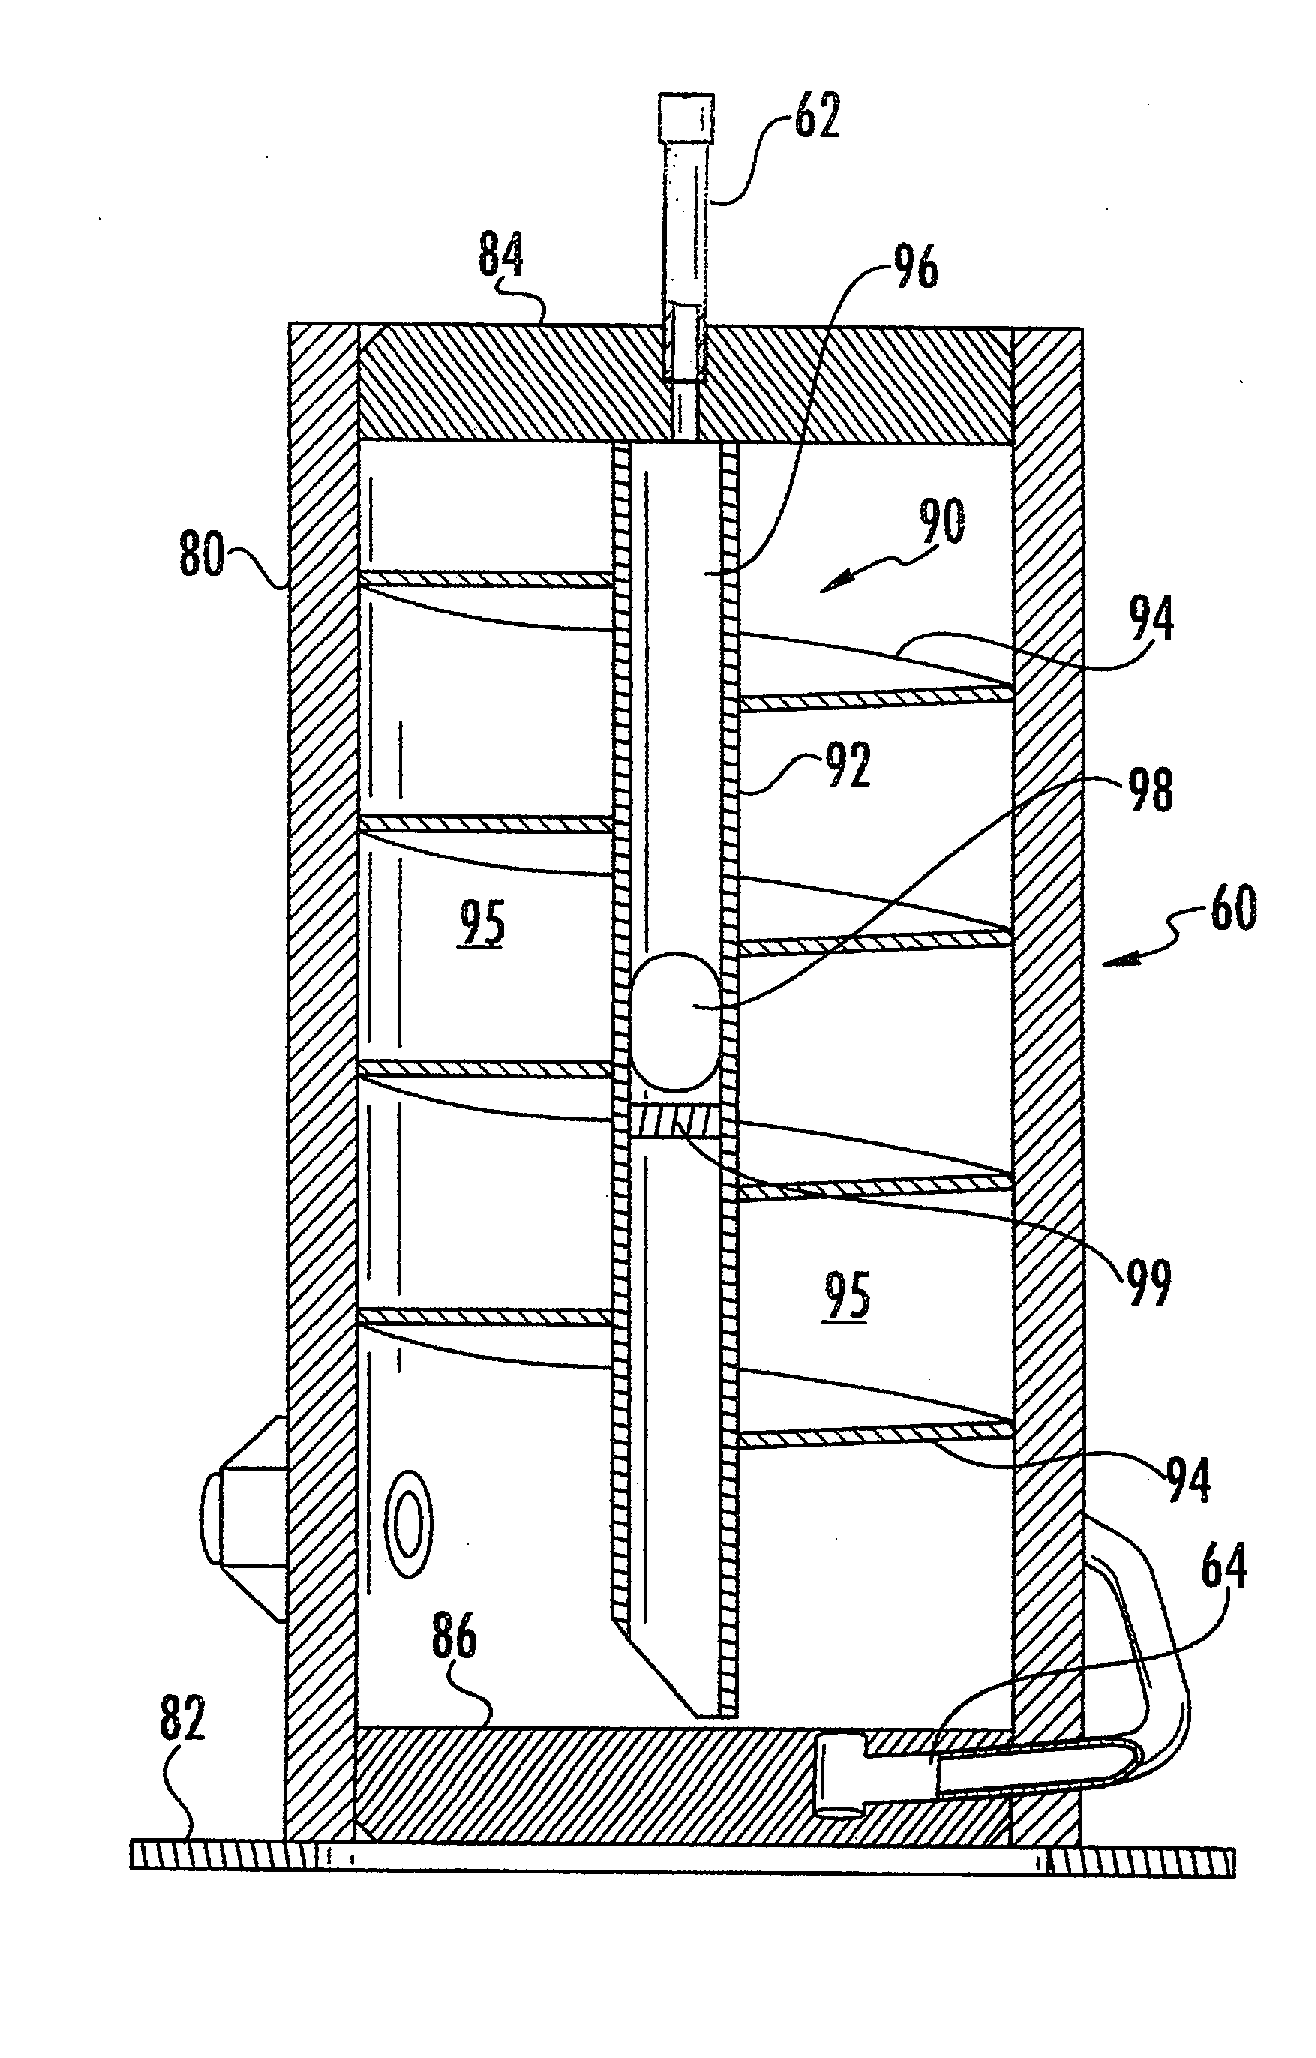 Liquid Vapor Phase Separation Apparatus